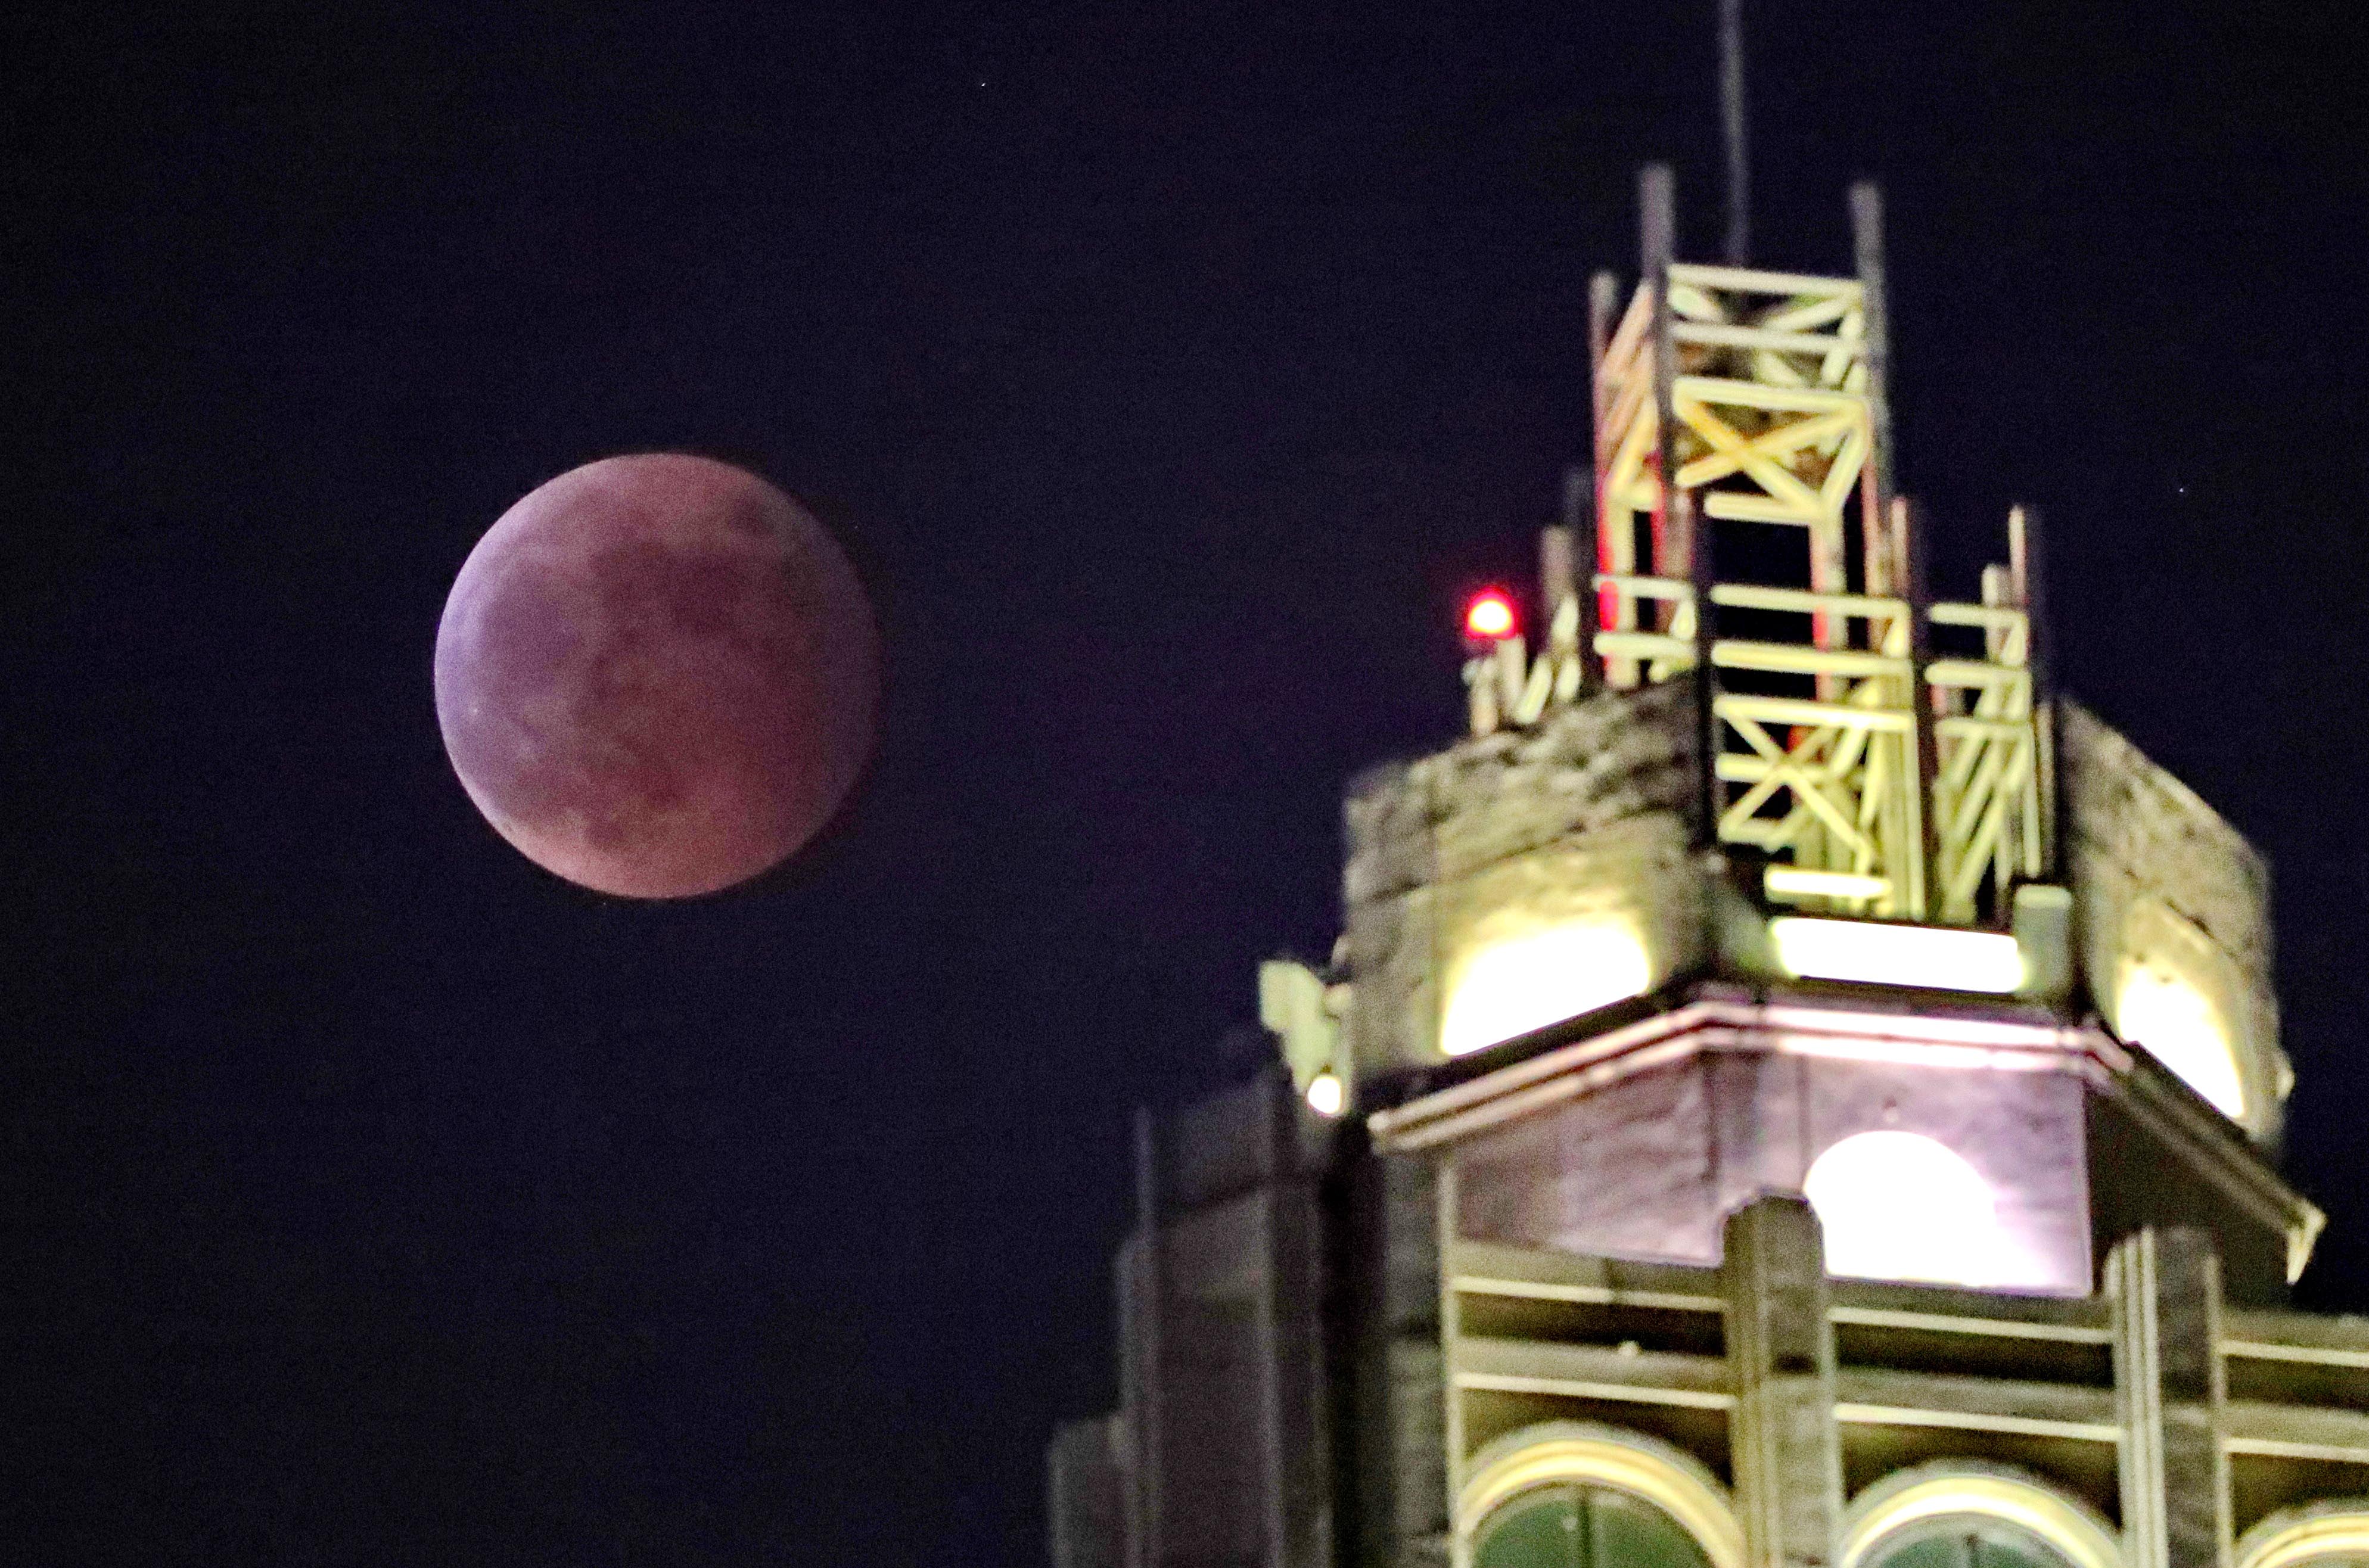 河北省秦皇岛市海港区拍摄的月食。曹建雄摄